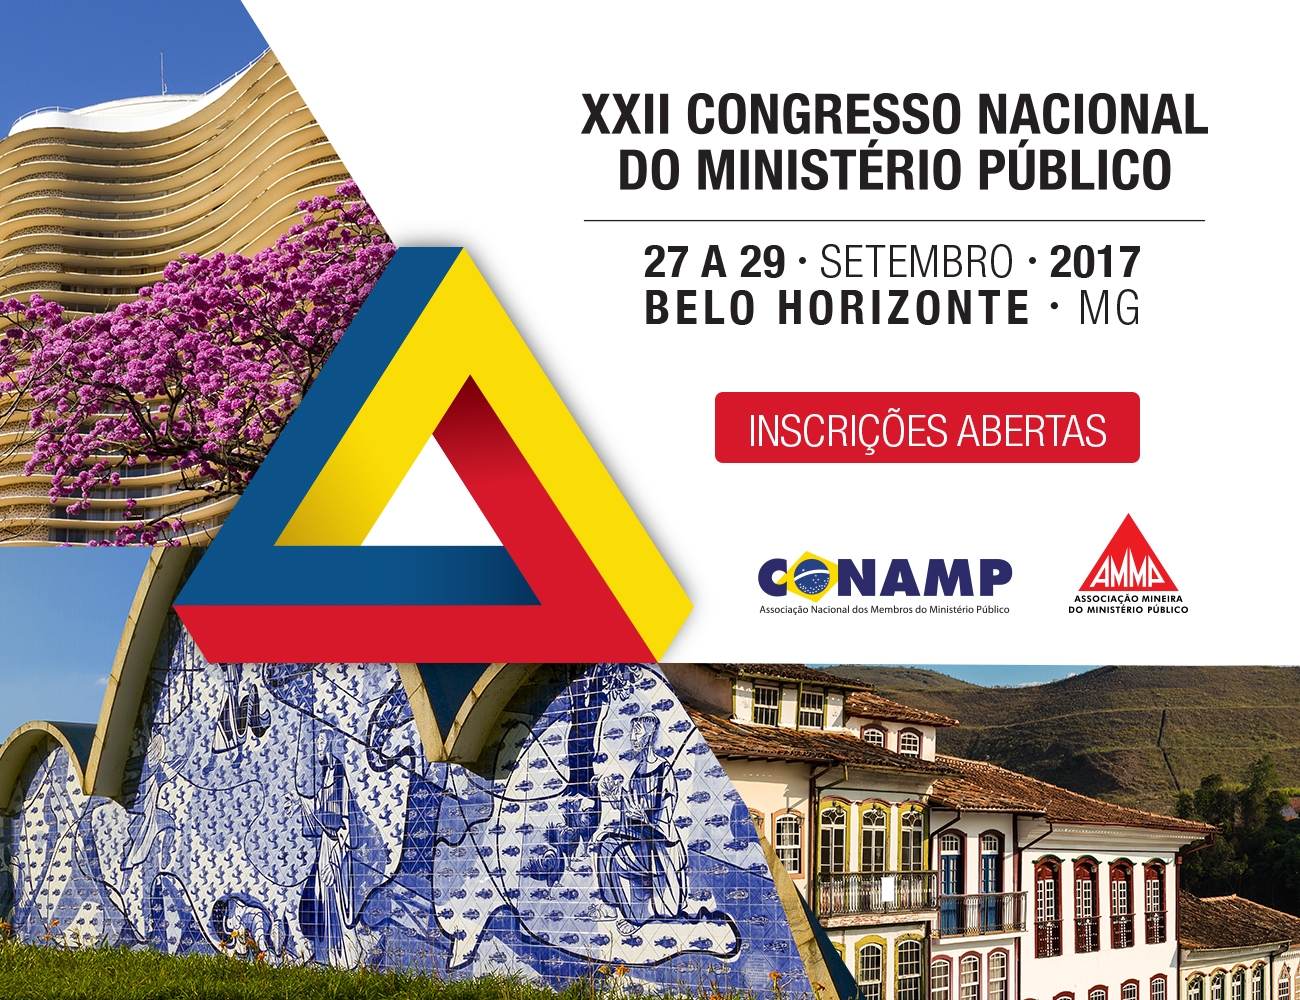 Estão abertas as inscrições para o XXII Congresso Nacional do Ministério Público